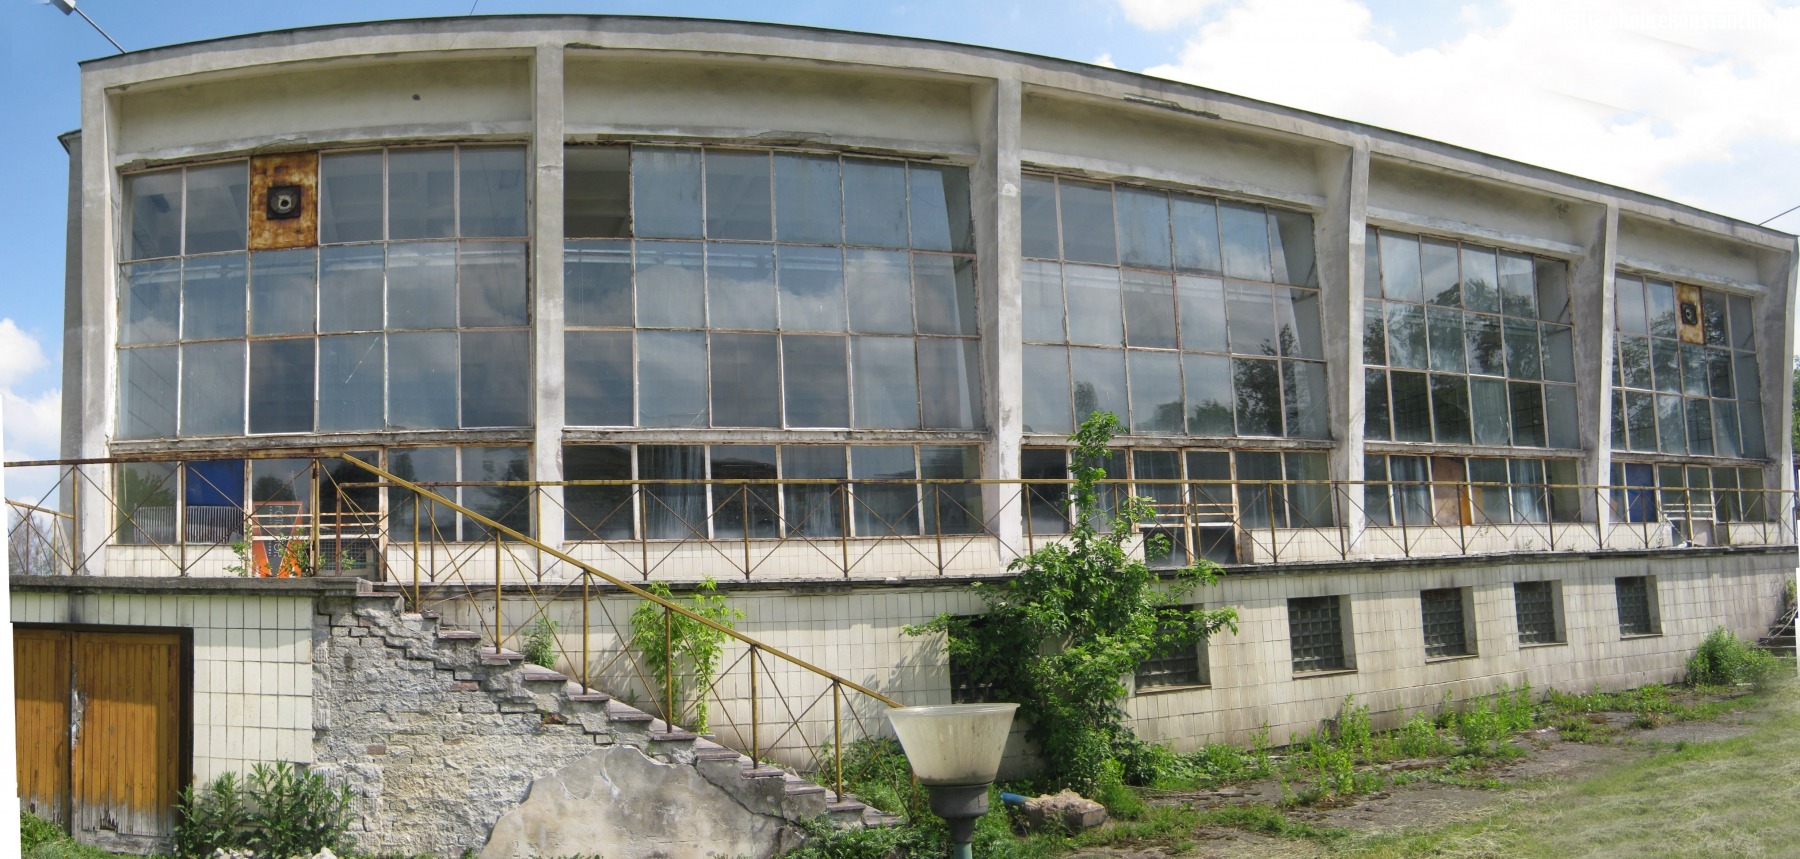 Zrujnowany basen pływacki na terenie dawnego Ośrodka Sportu w Mirkowie, Konstancin-Jeziorna